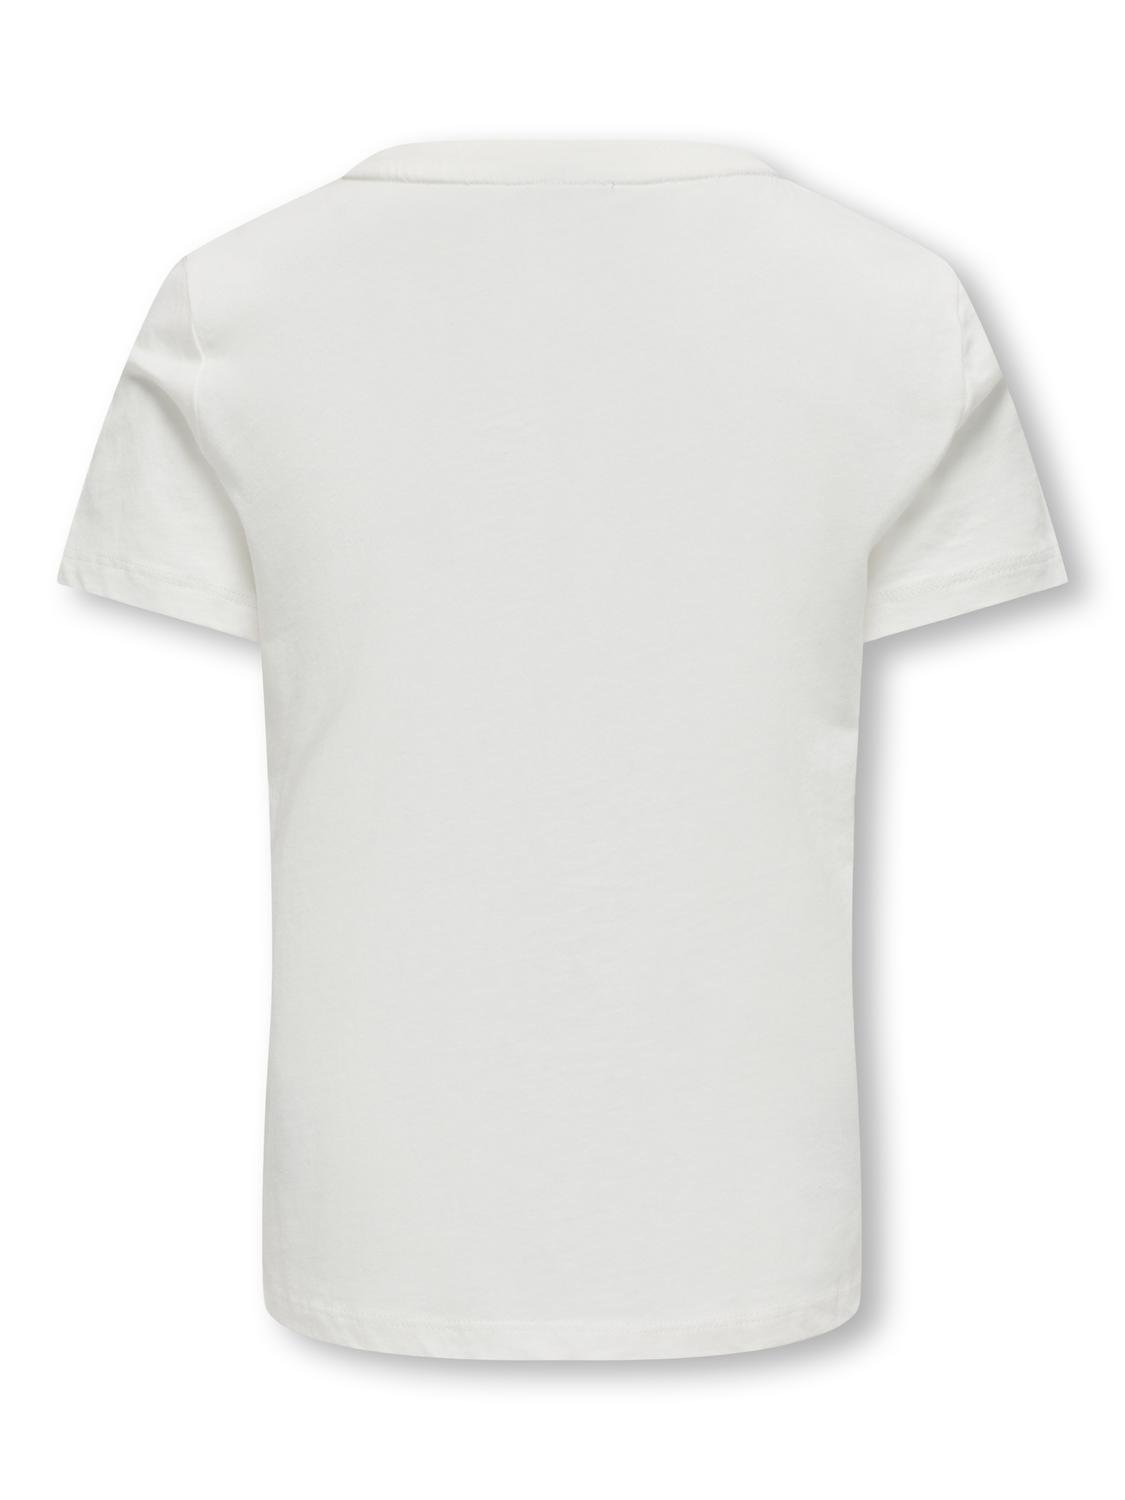 ONLY O-neck t-shirt -Cloud Dancer - 15323354